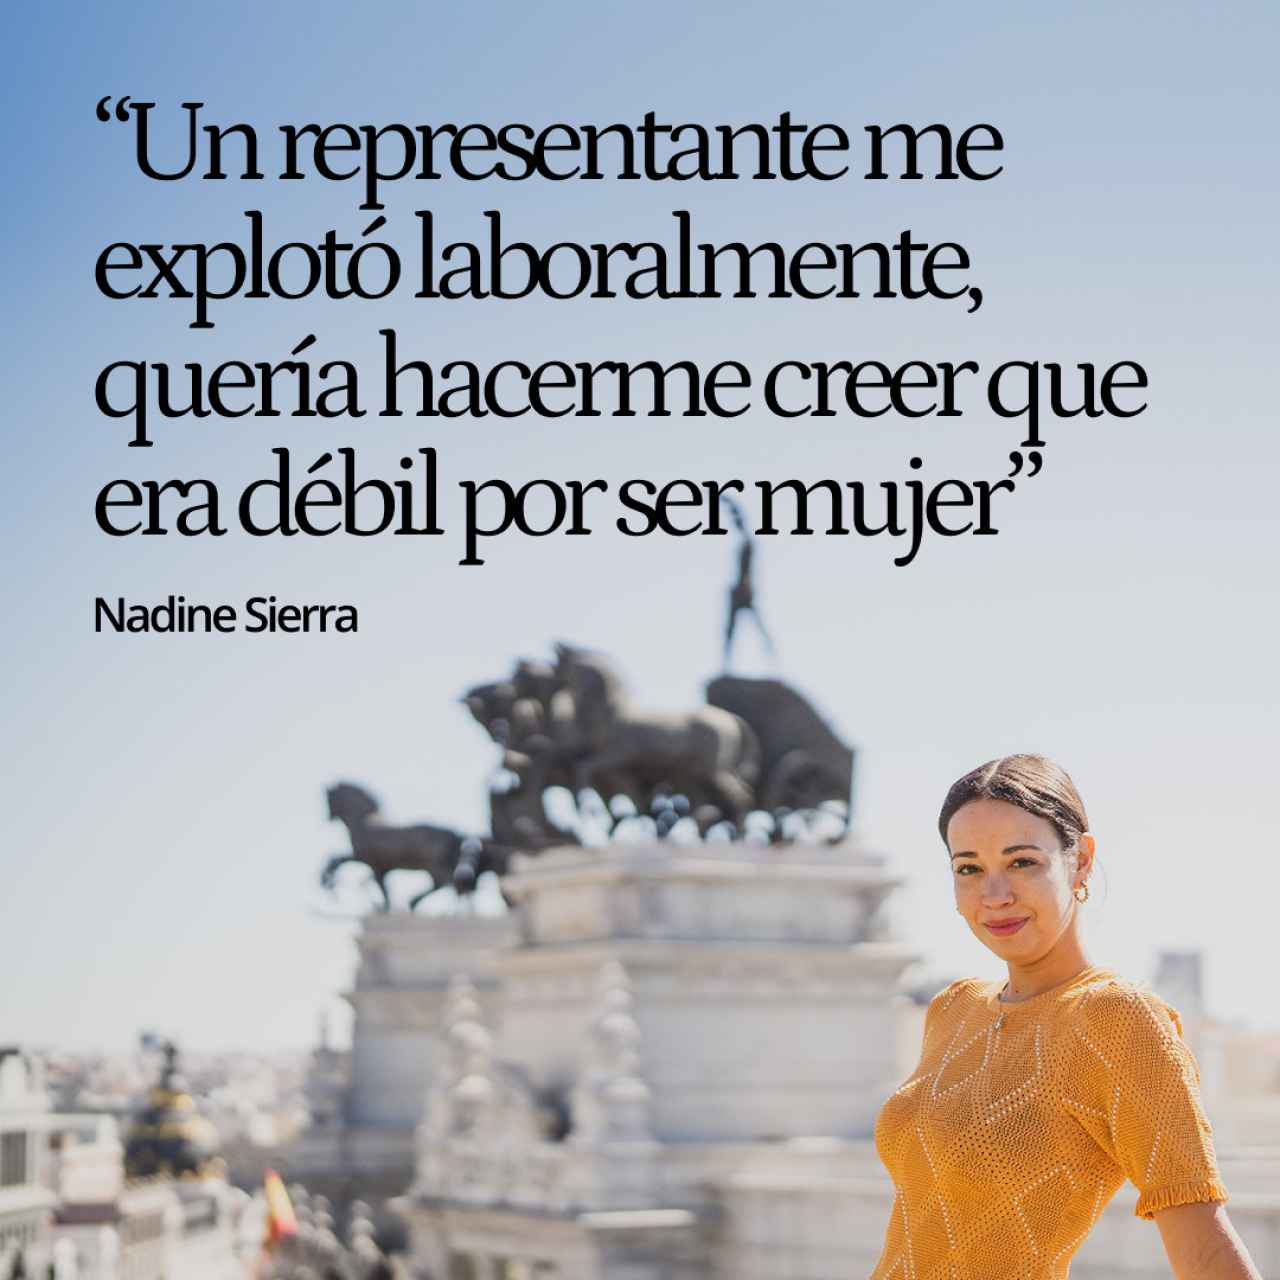 Nadine Sierra, soprano: “Un representante me explotó laboralmente, quería hacerme creer que era débil por ser mujer”